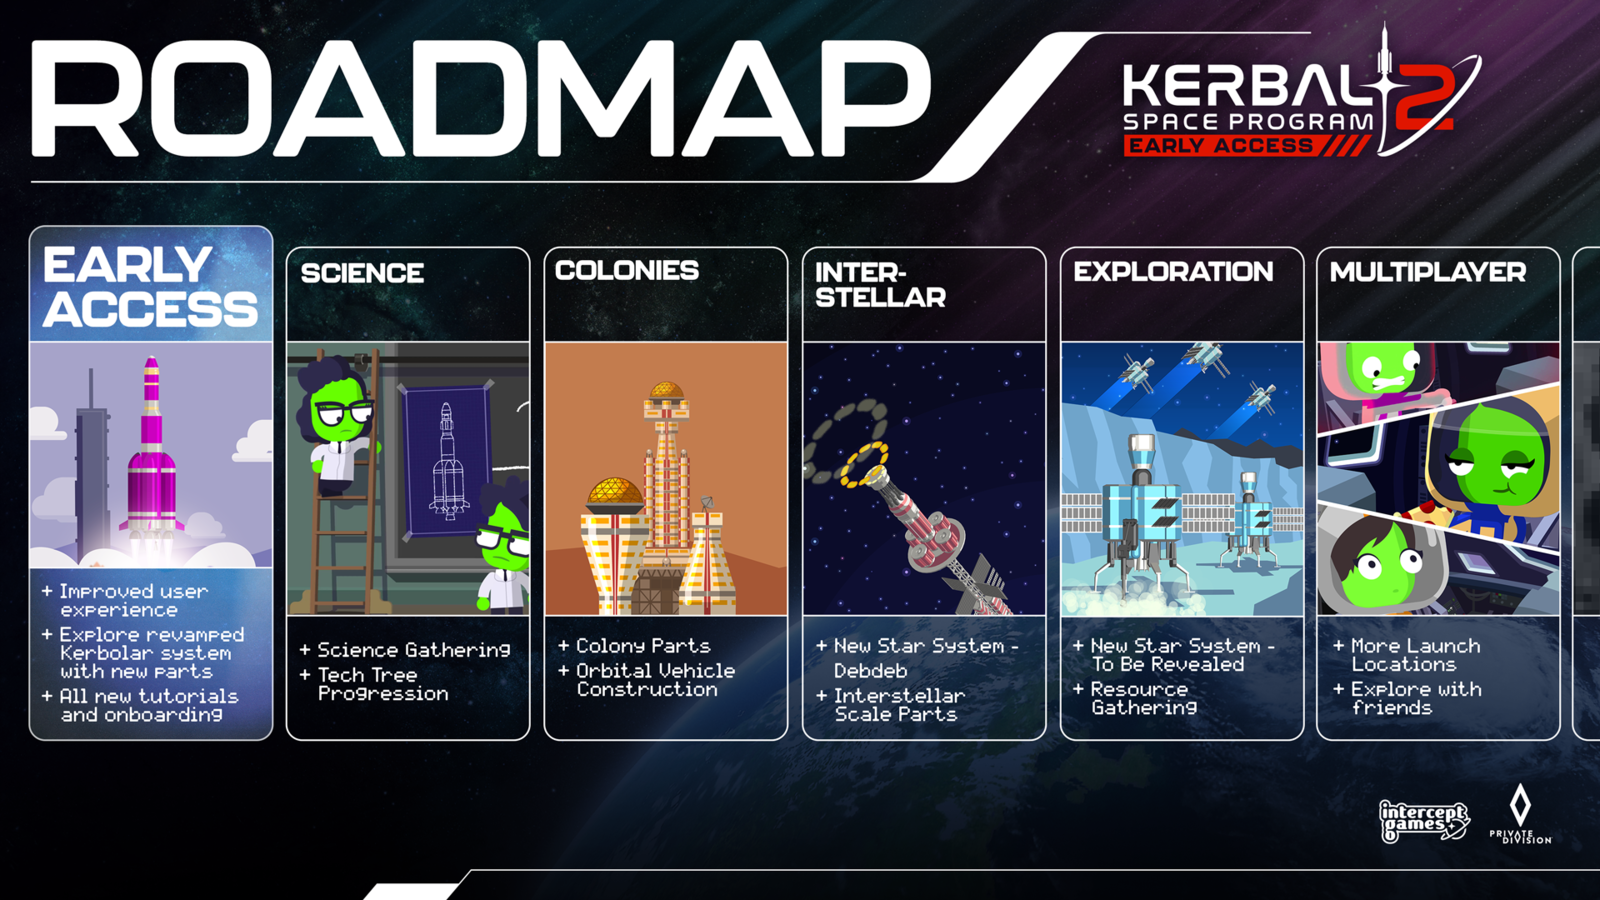 The roadmap of KSP2